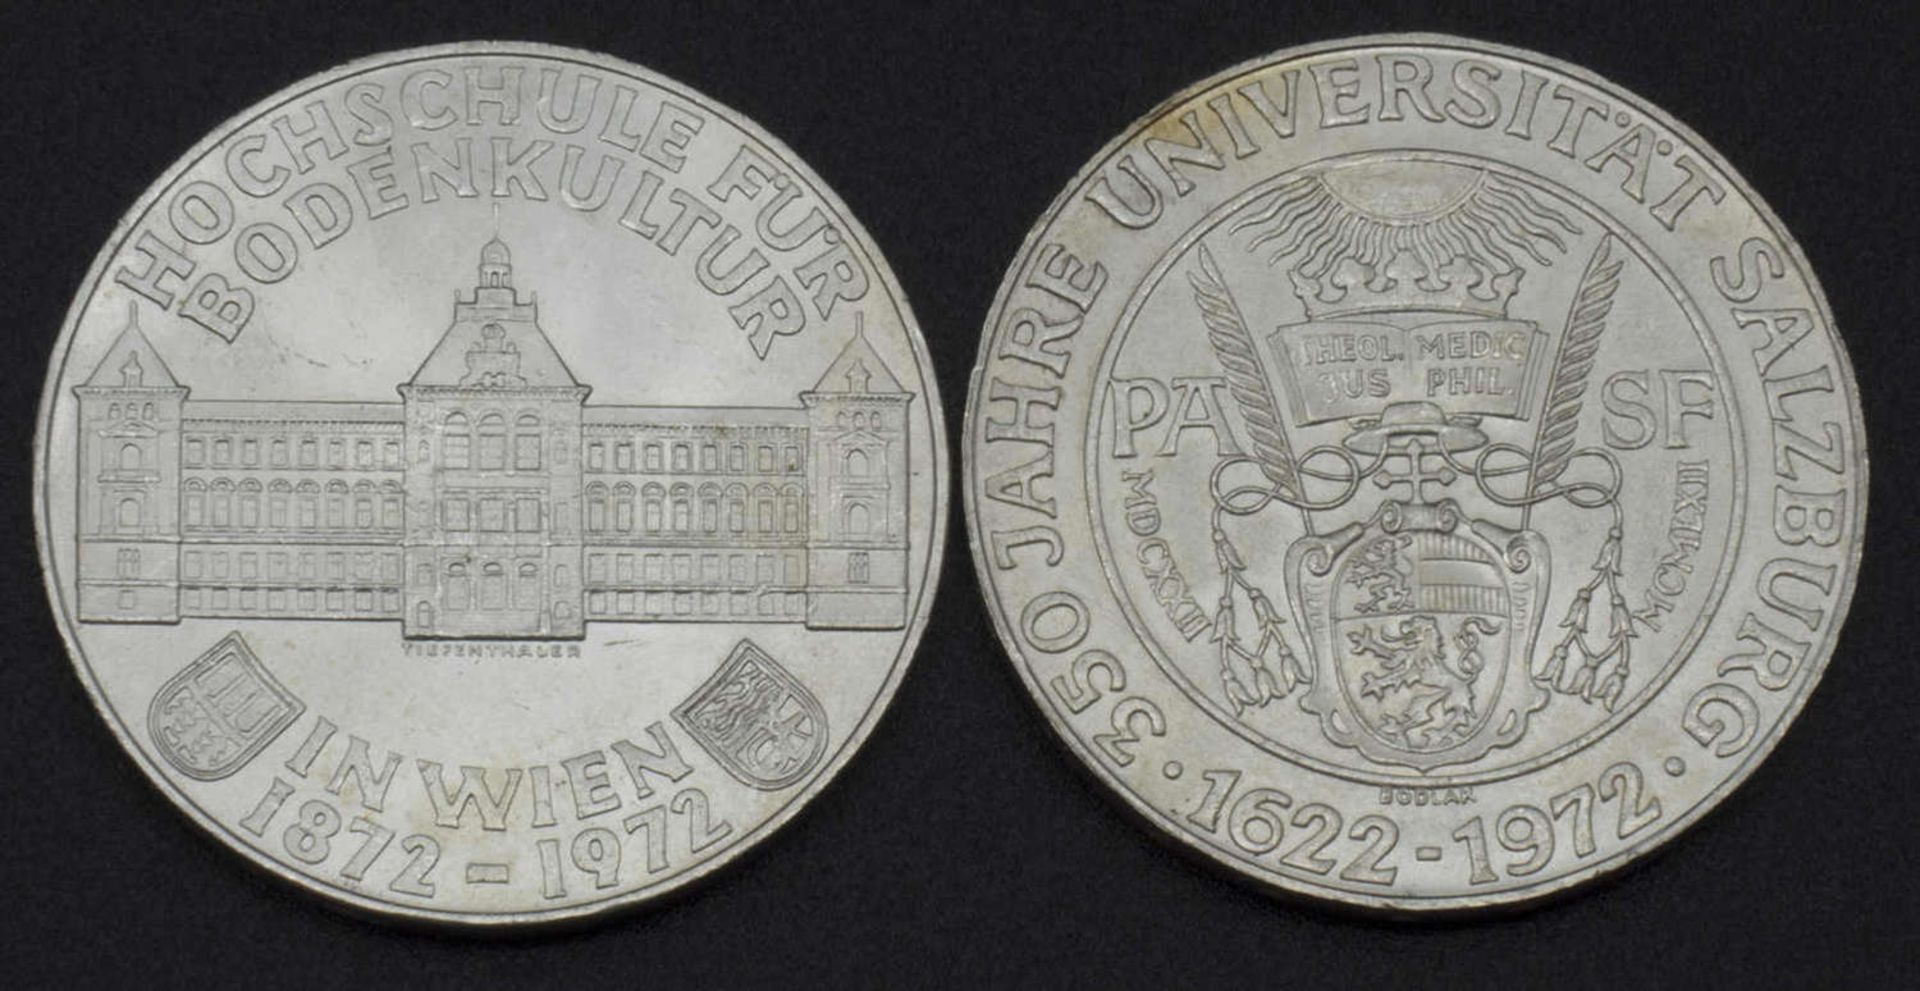 Österreich, 2x 50 Schilling Silbermünzen, 1972Austria, 2x 50 shilling silver coins, 1972